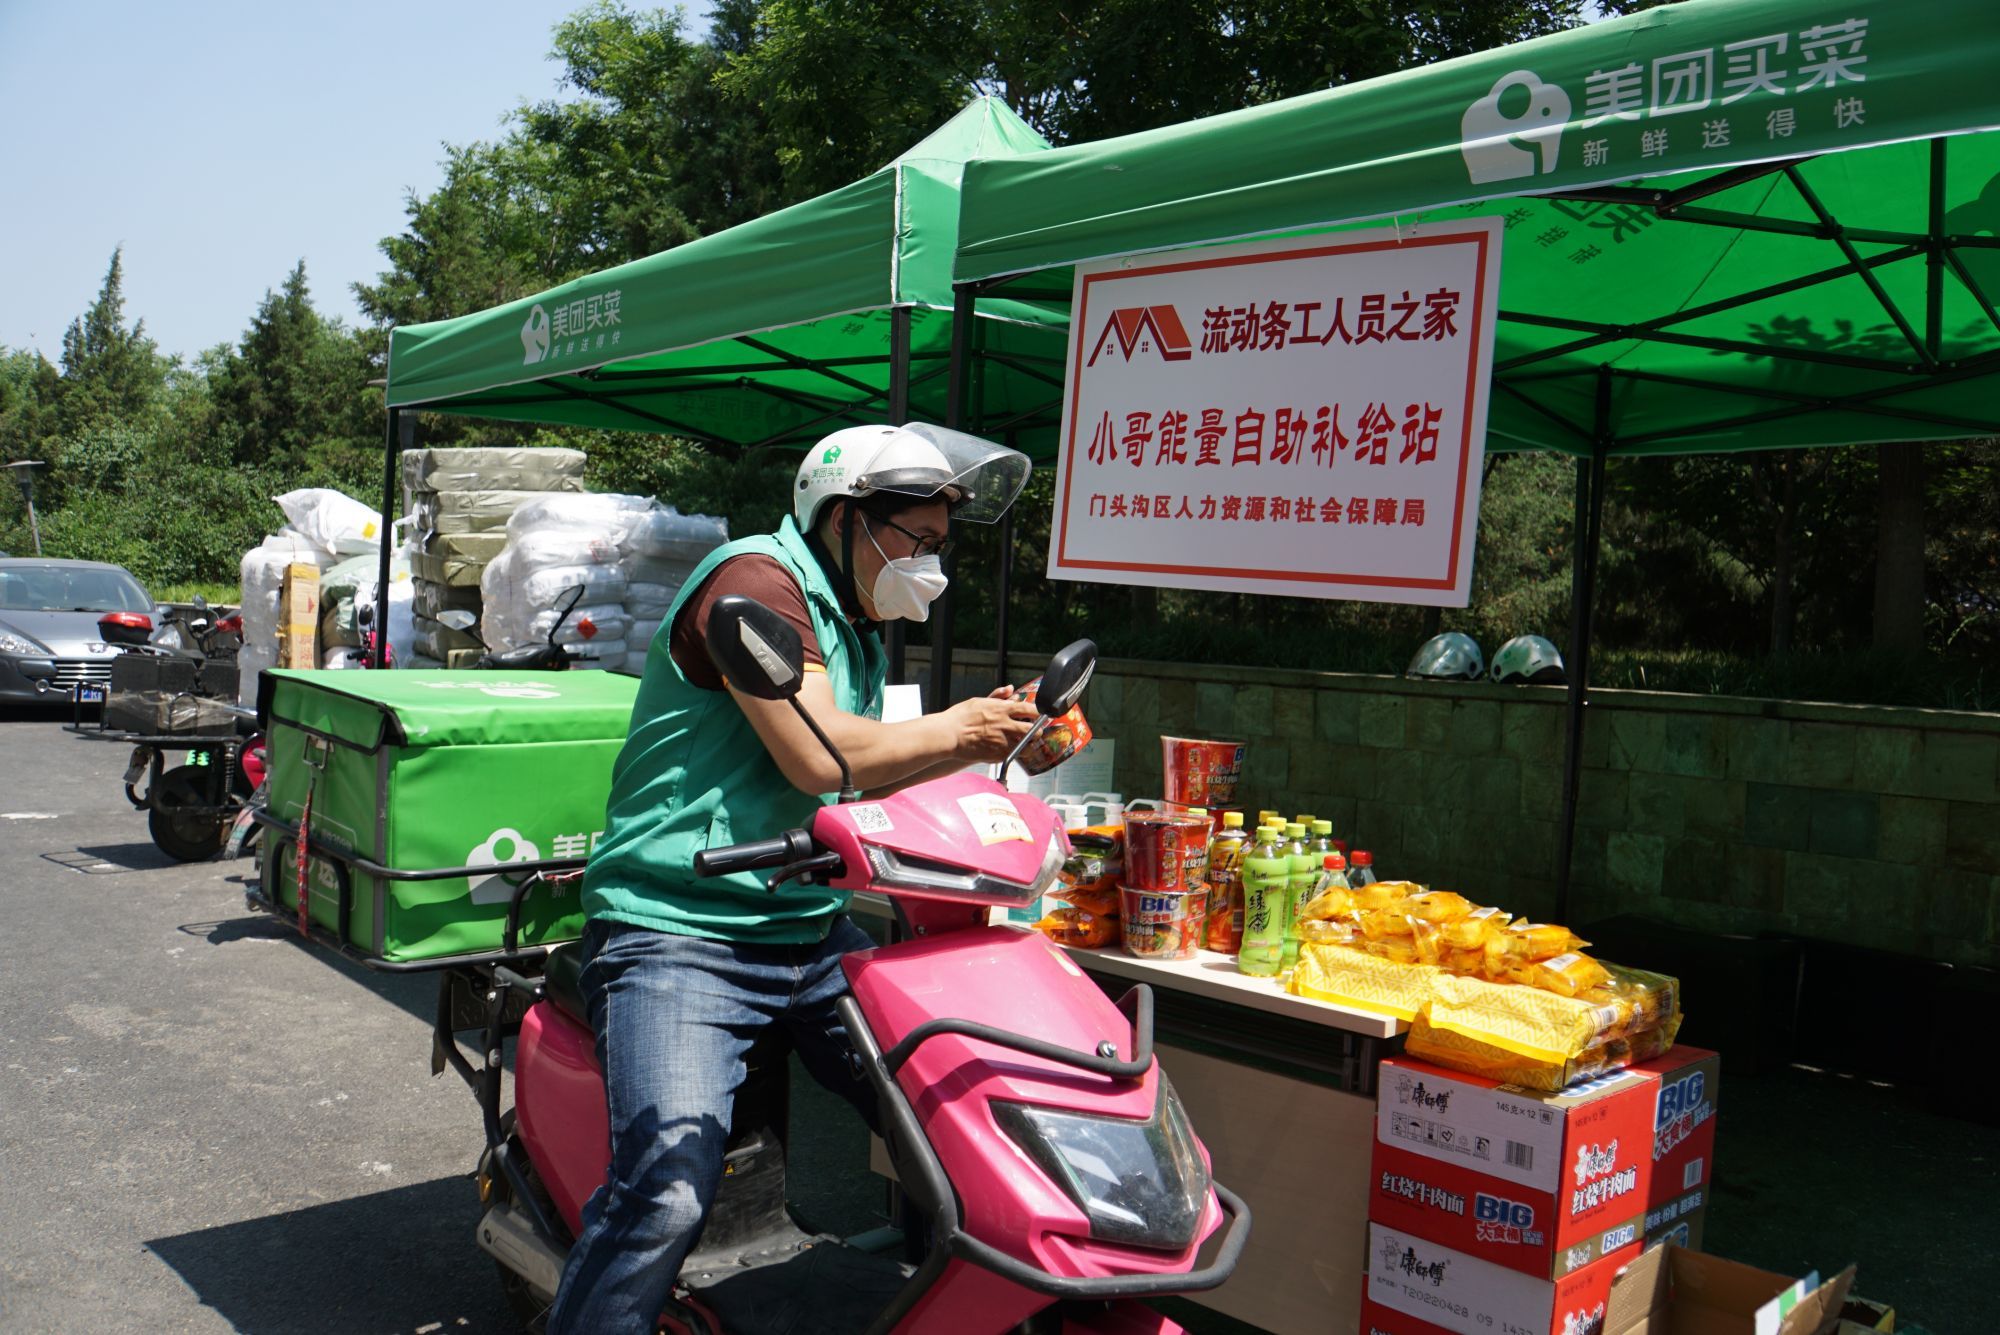 北京门头沟首创“流动务工人员之家”服务模式 为新业态劳动者保驾护航